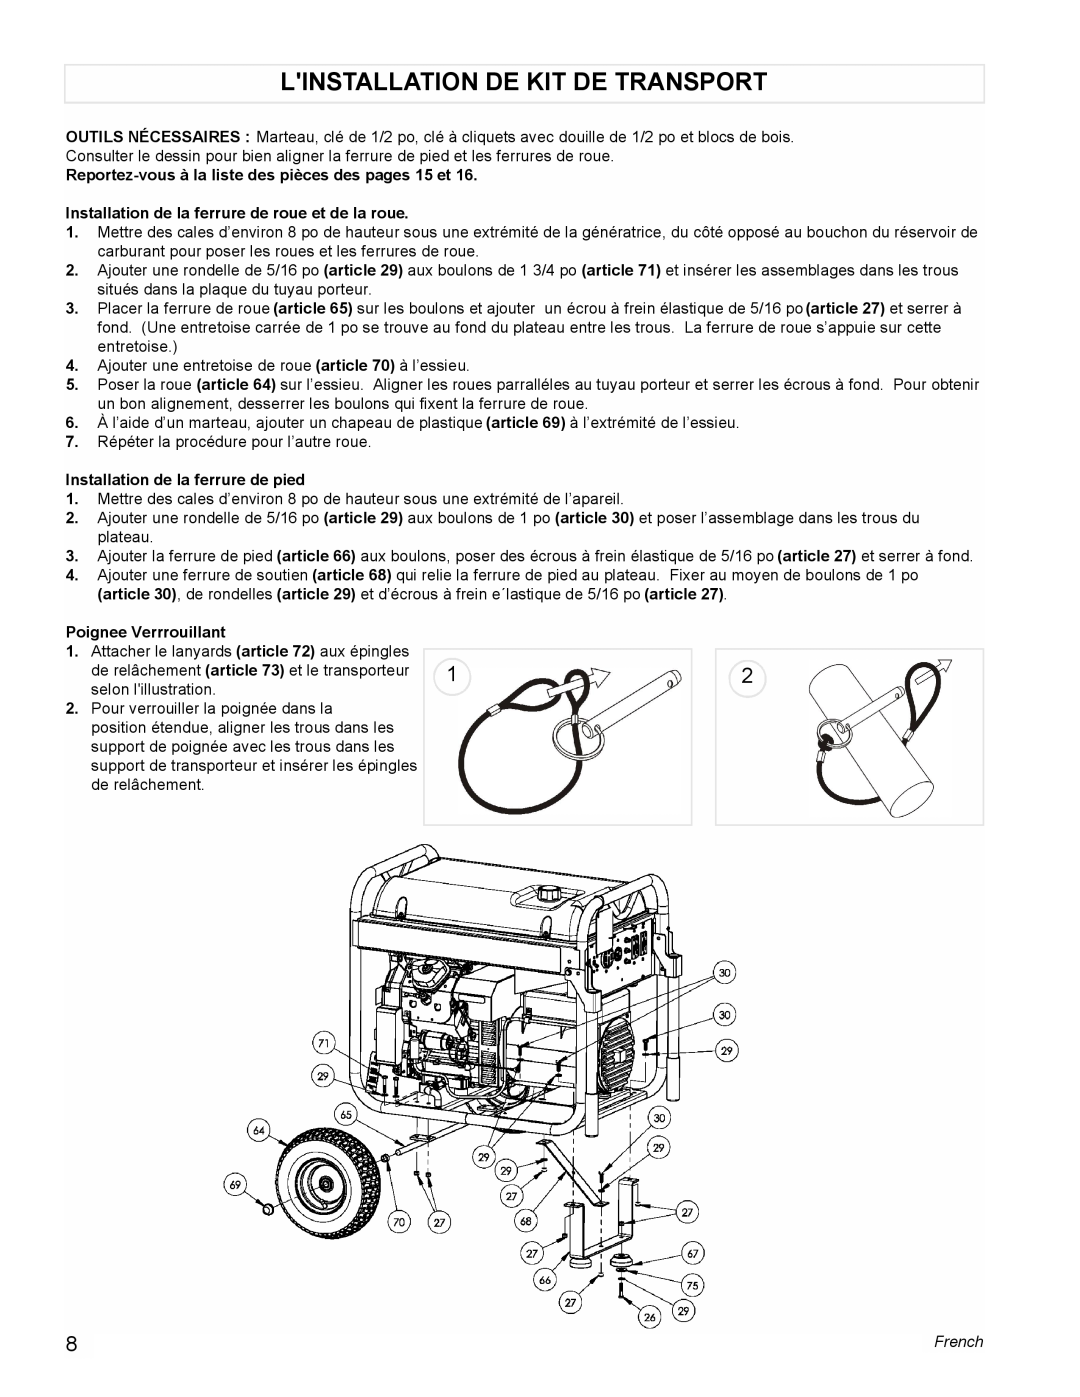 Coleman PM0601100 manual Linstallation De Kit De Transport, Reportez-vous à la liste des pièces des pages 15 et, French 